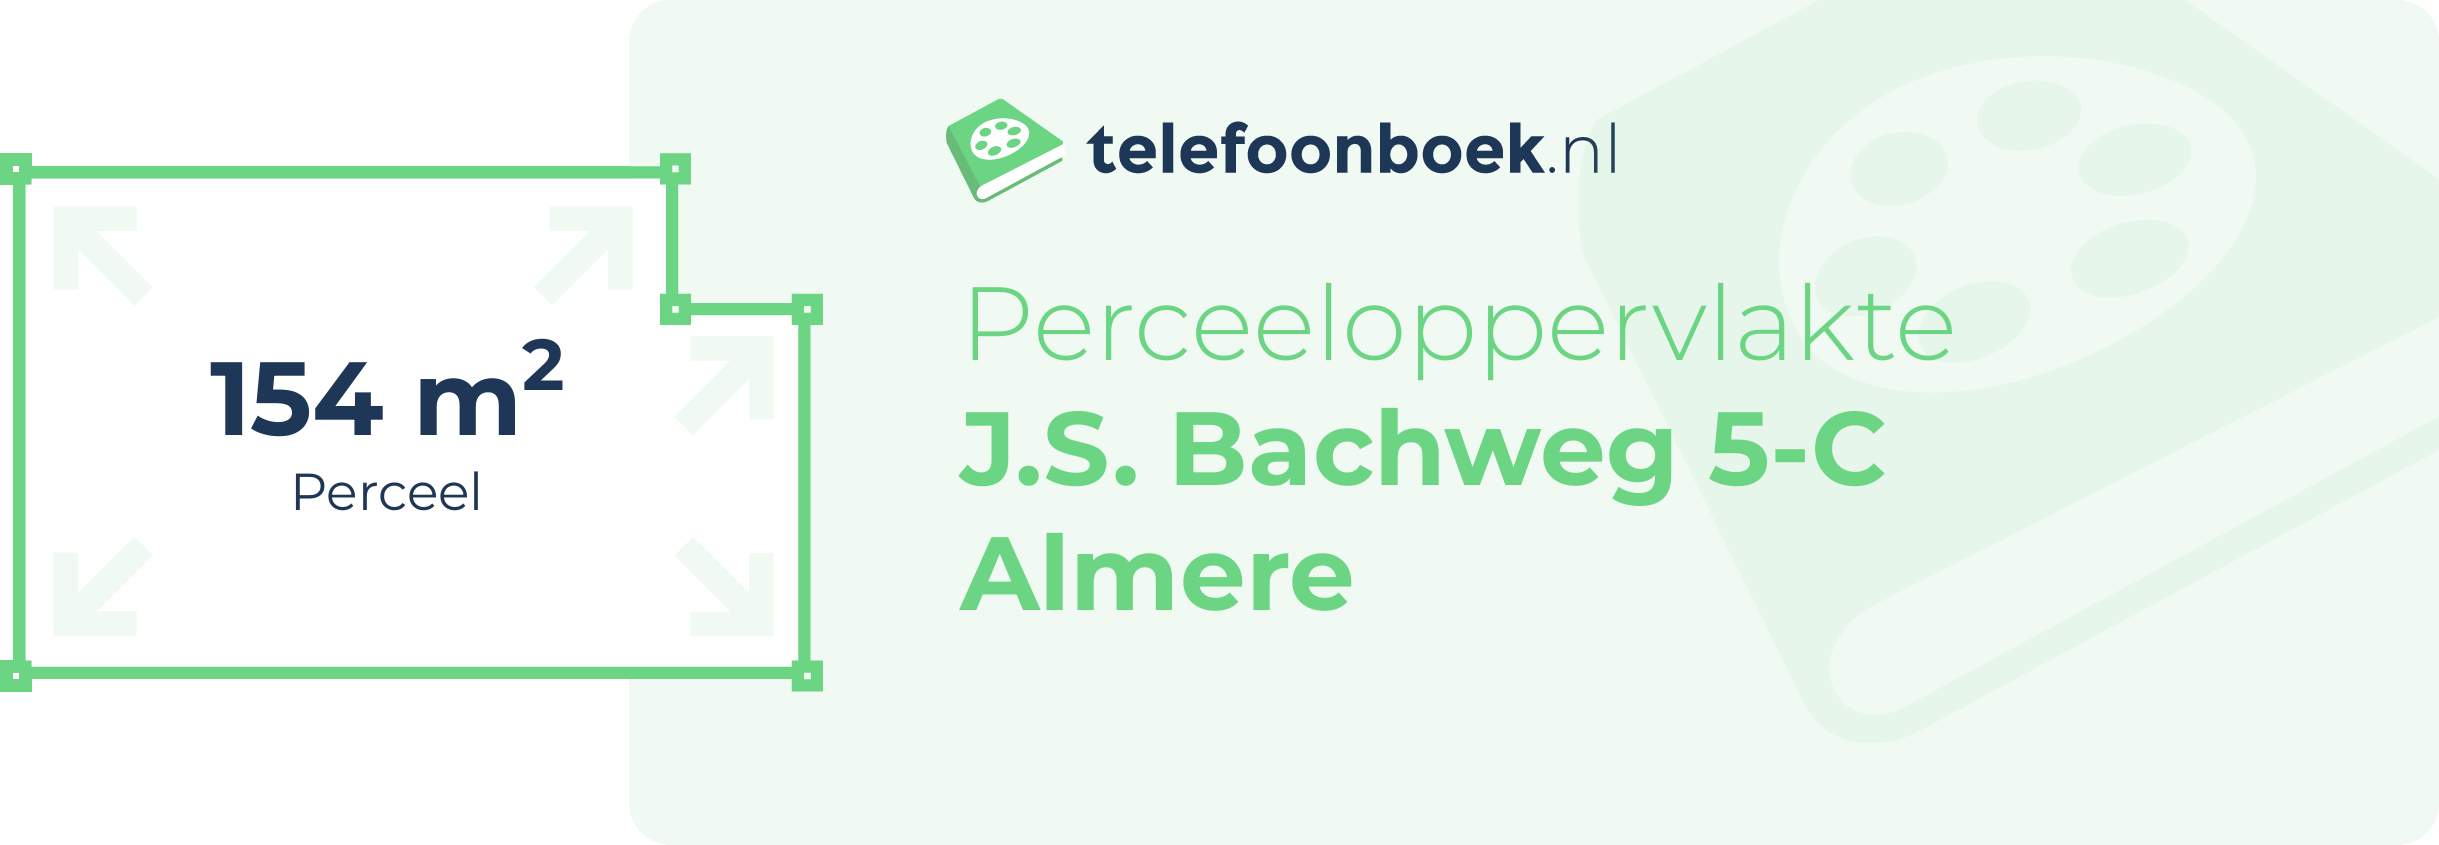 Perceeloppervlakte J.S. Bachweg 5-C Almere